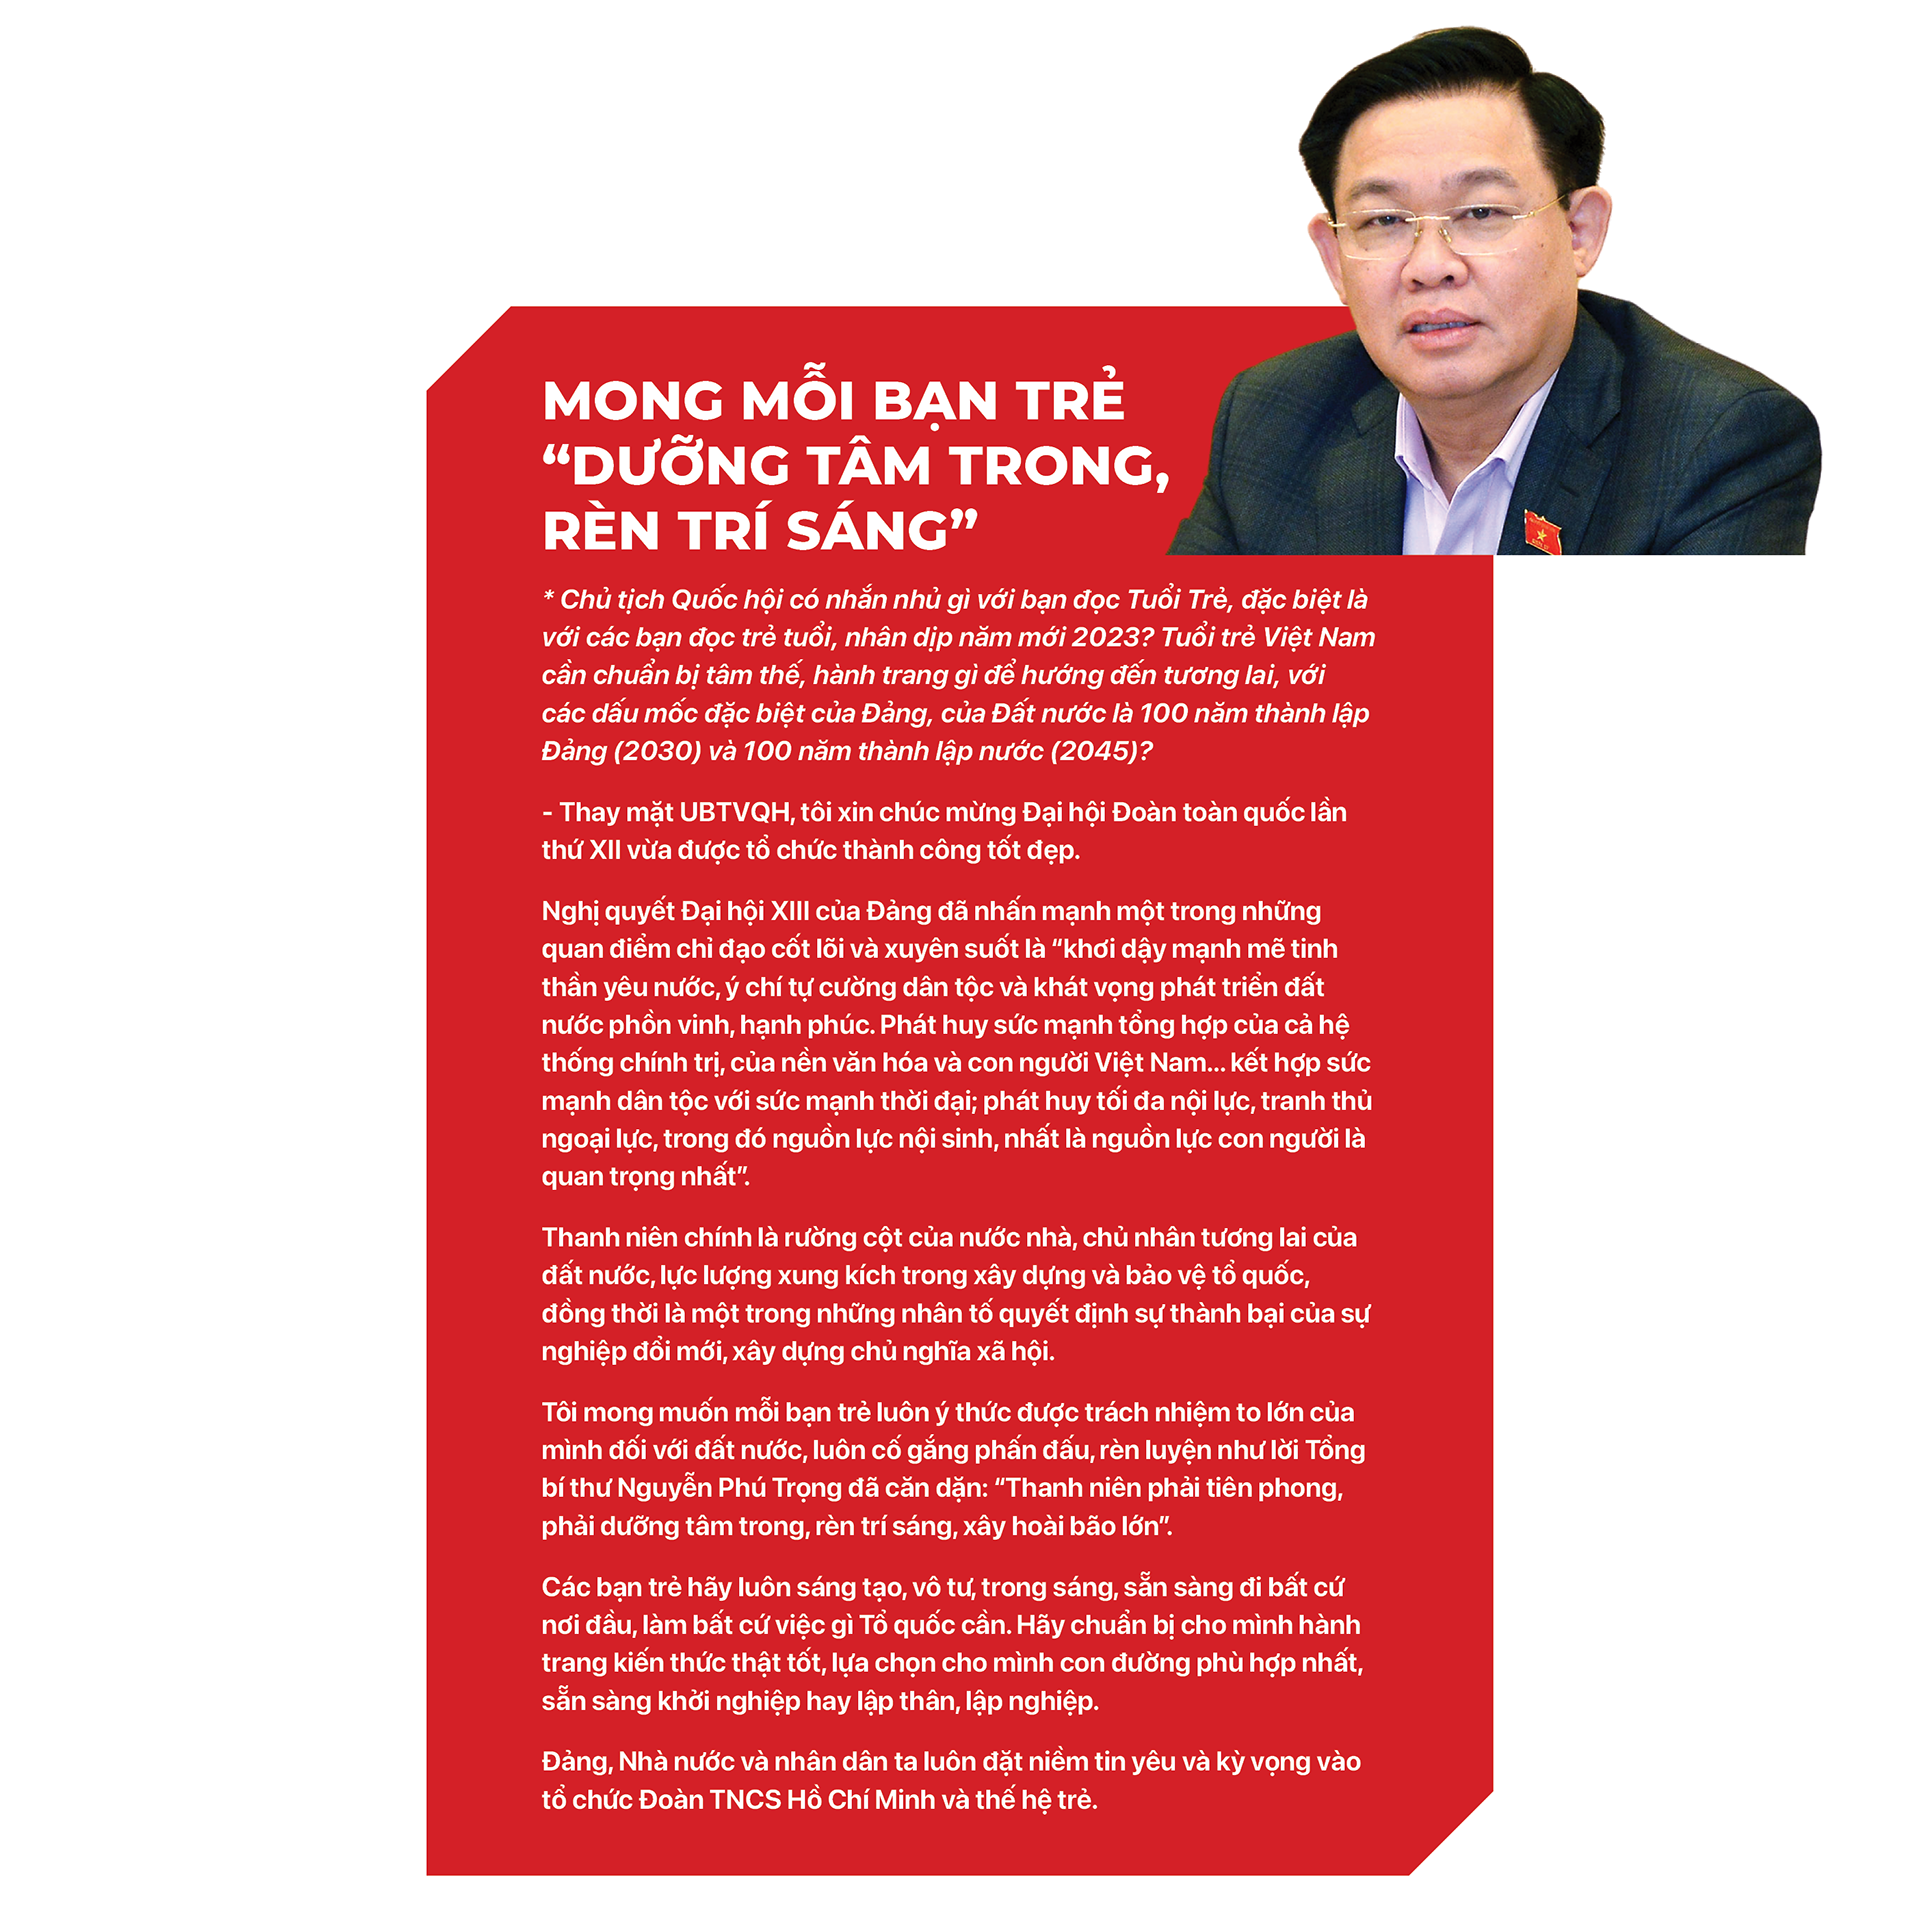 Chủ tịch Quốc hội Vương Đình Huệ: Tuyệt đối không cài cắm lợi ích cục bộ vào luật - Ảnh 6.